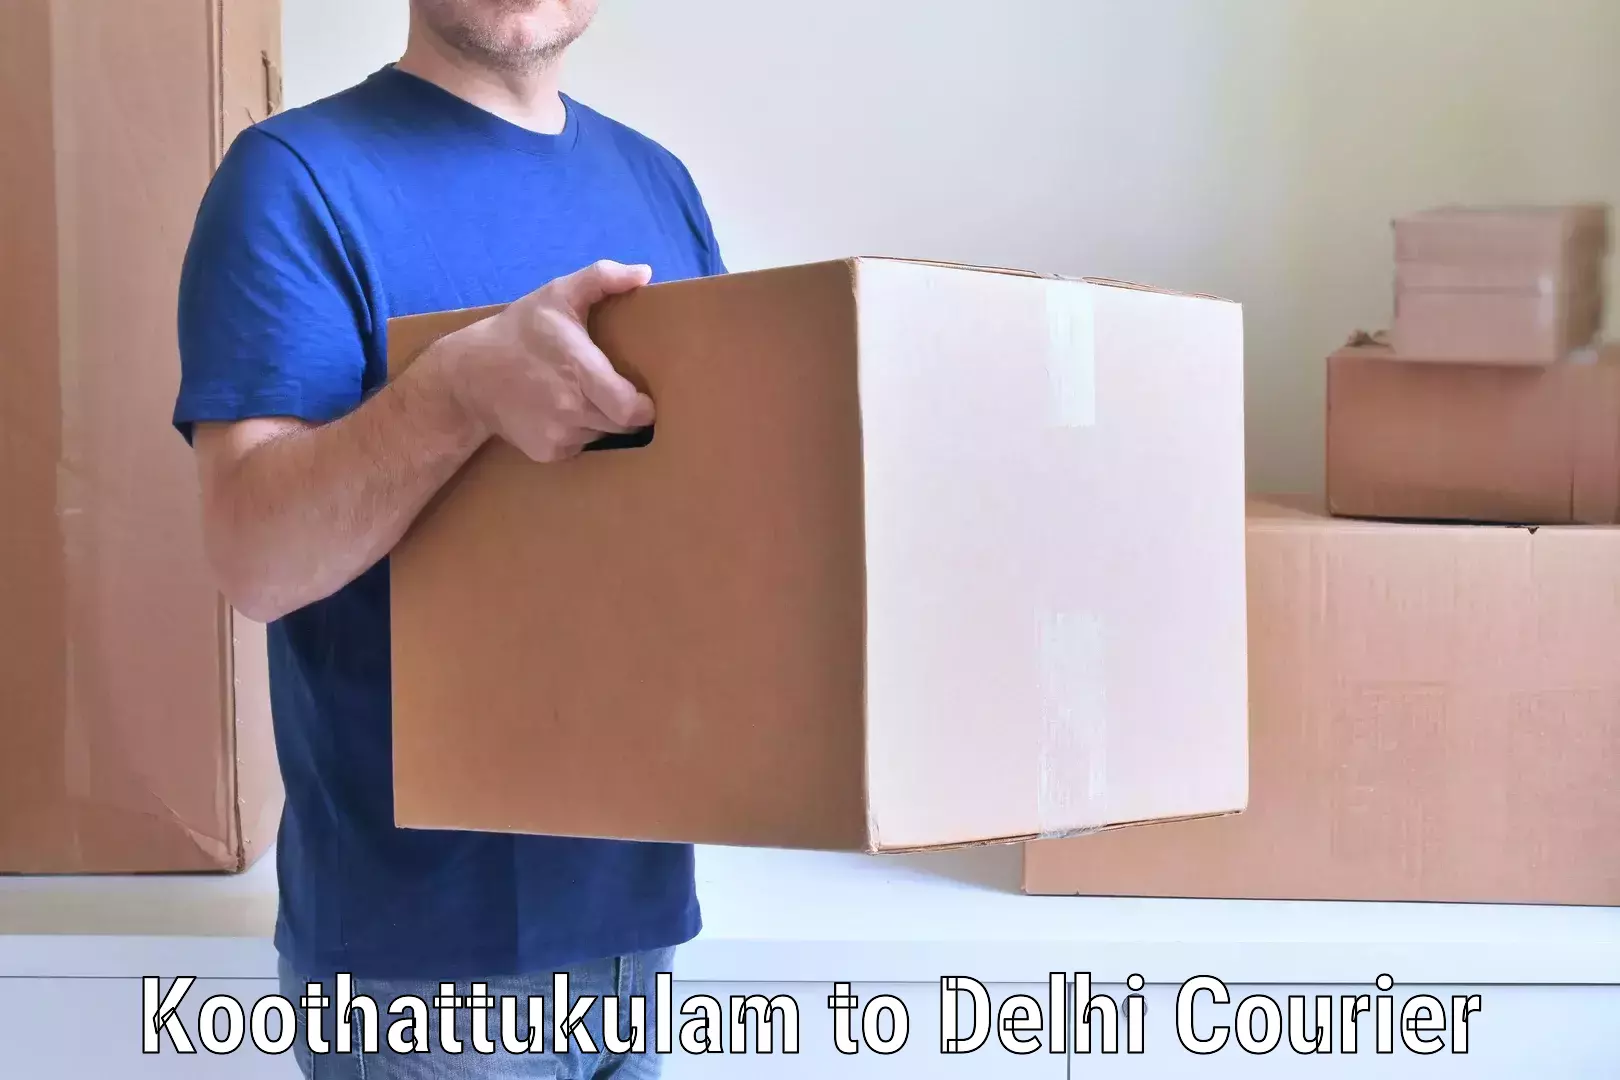 Hassle-free relocation Koothattukulam to IIT Delhi